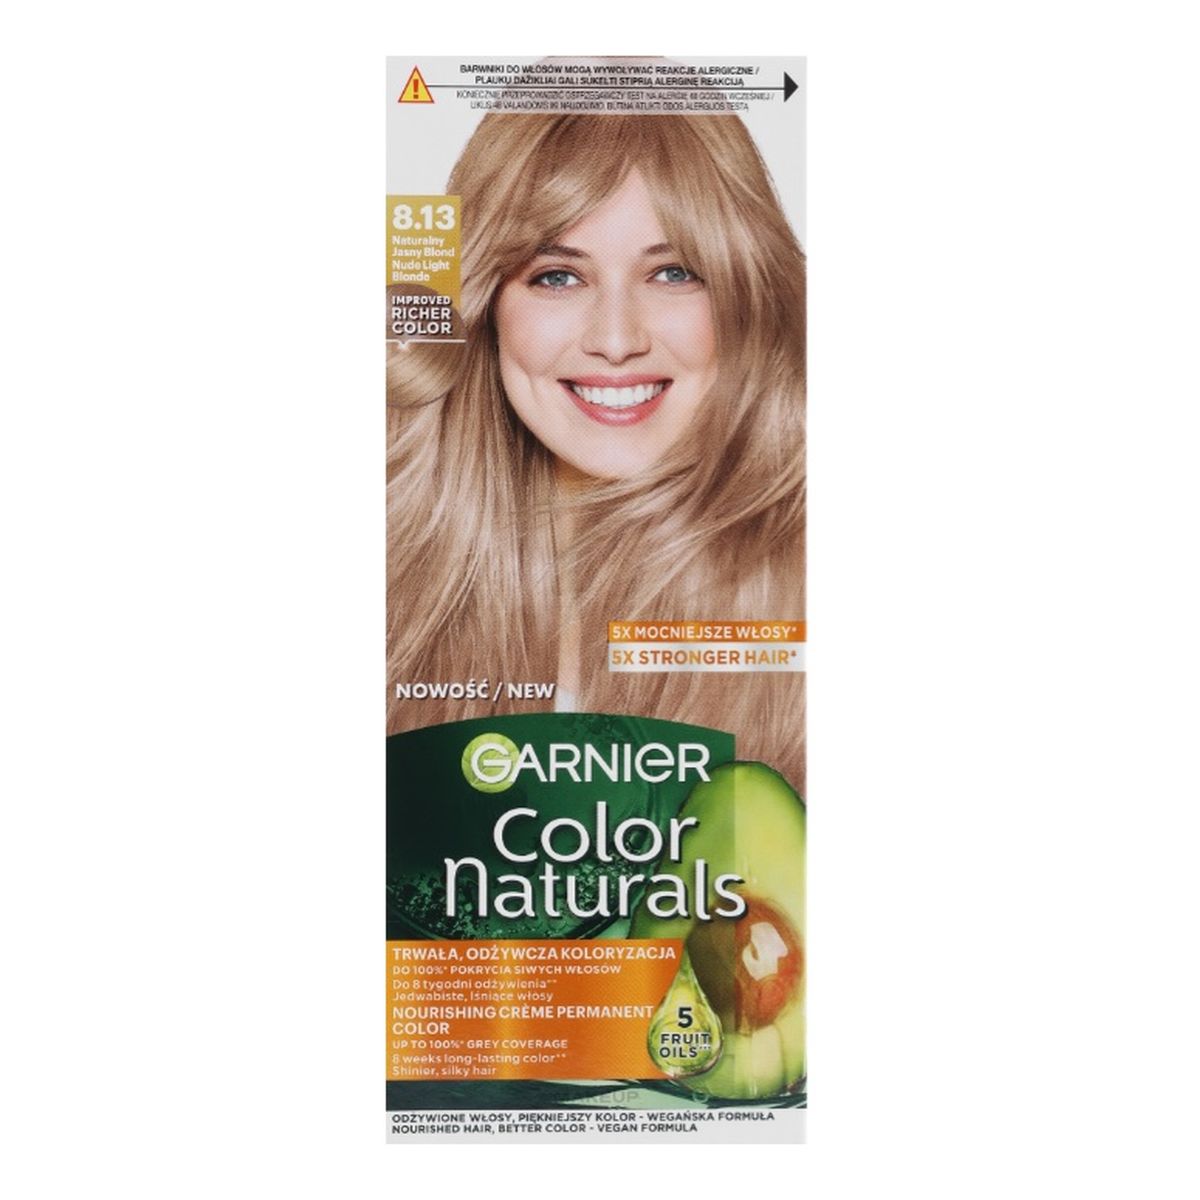 Garnier Color naturals odżywcza farba do włosów 8.13 naturalny jasny blond